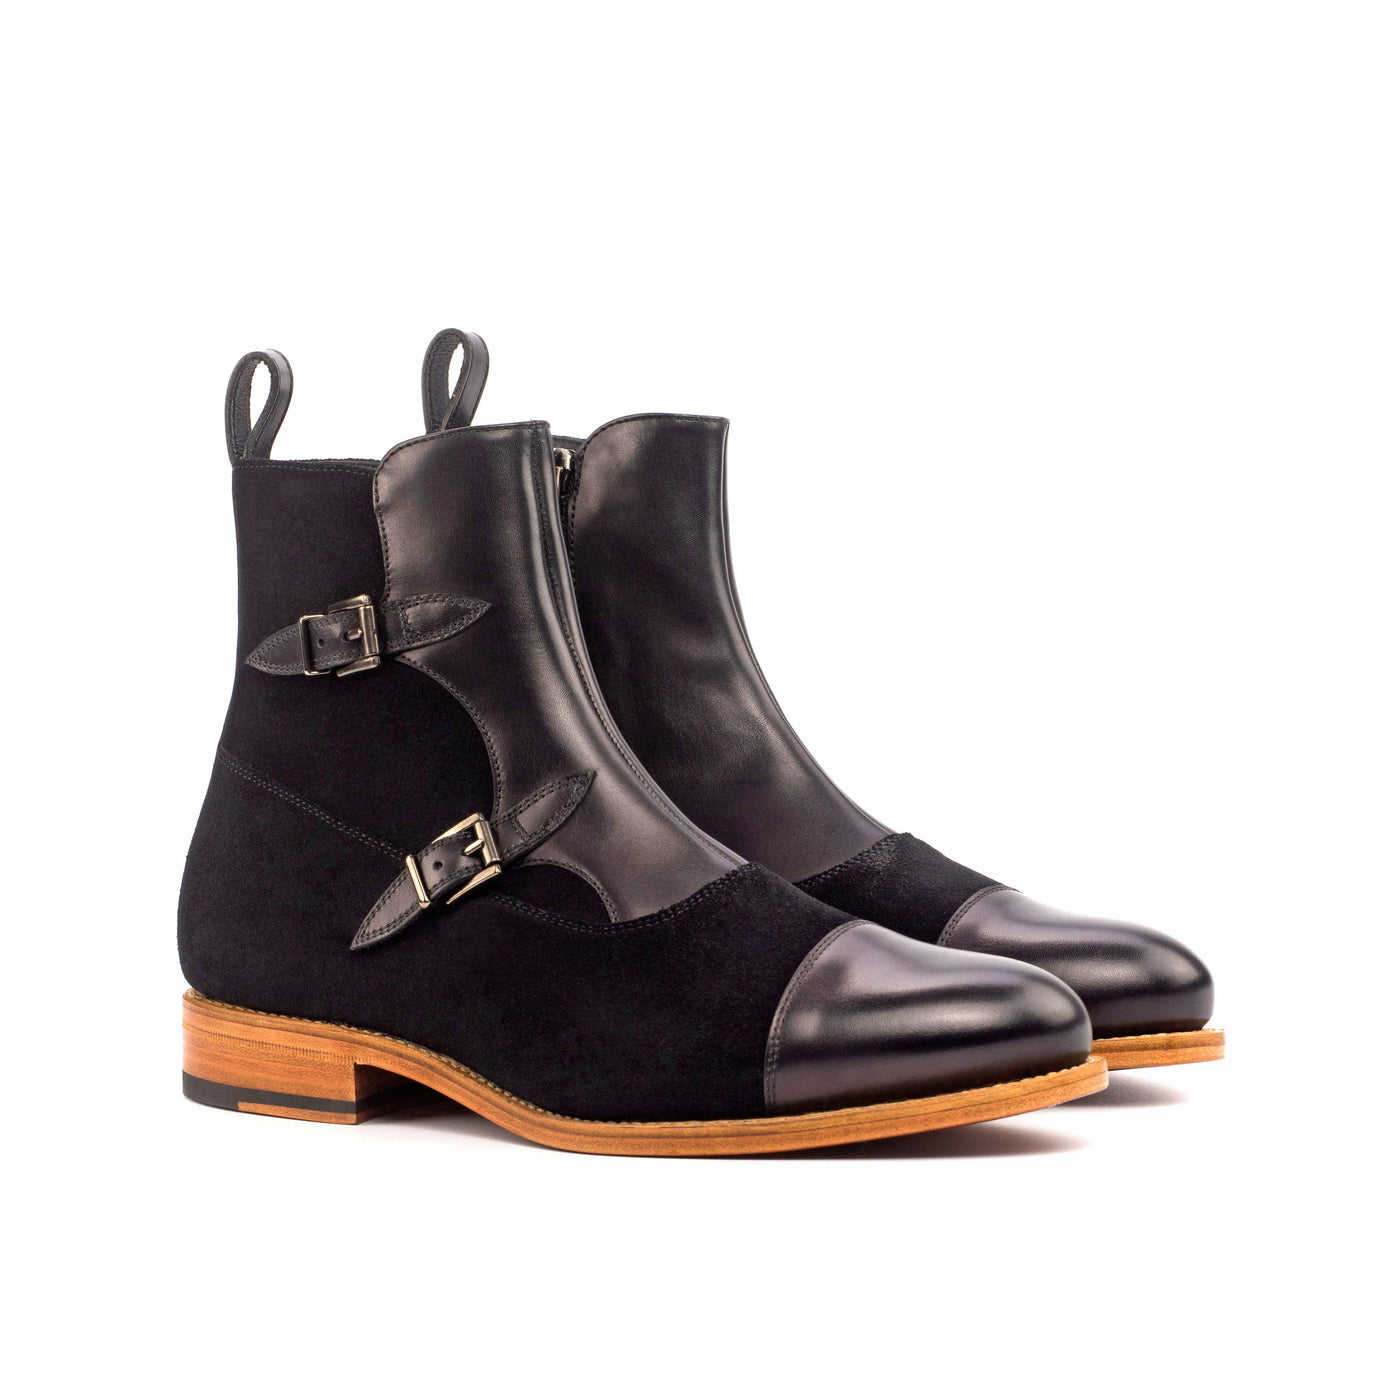 Men's Octavian Buckle Boots Leather Goodyear Welt Black 4560 3- MERRIMIUM